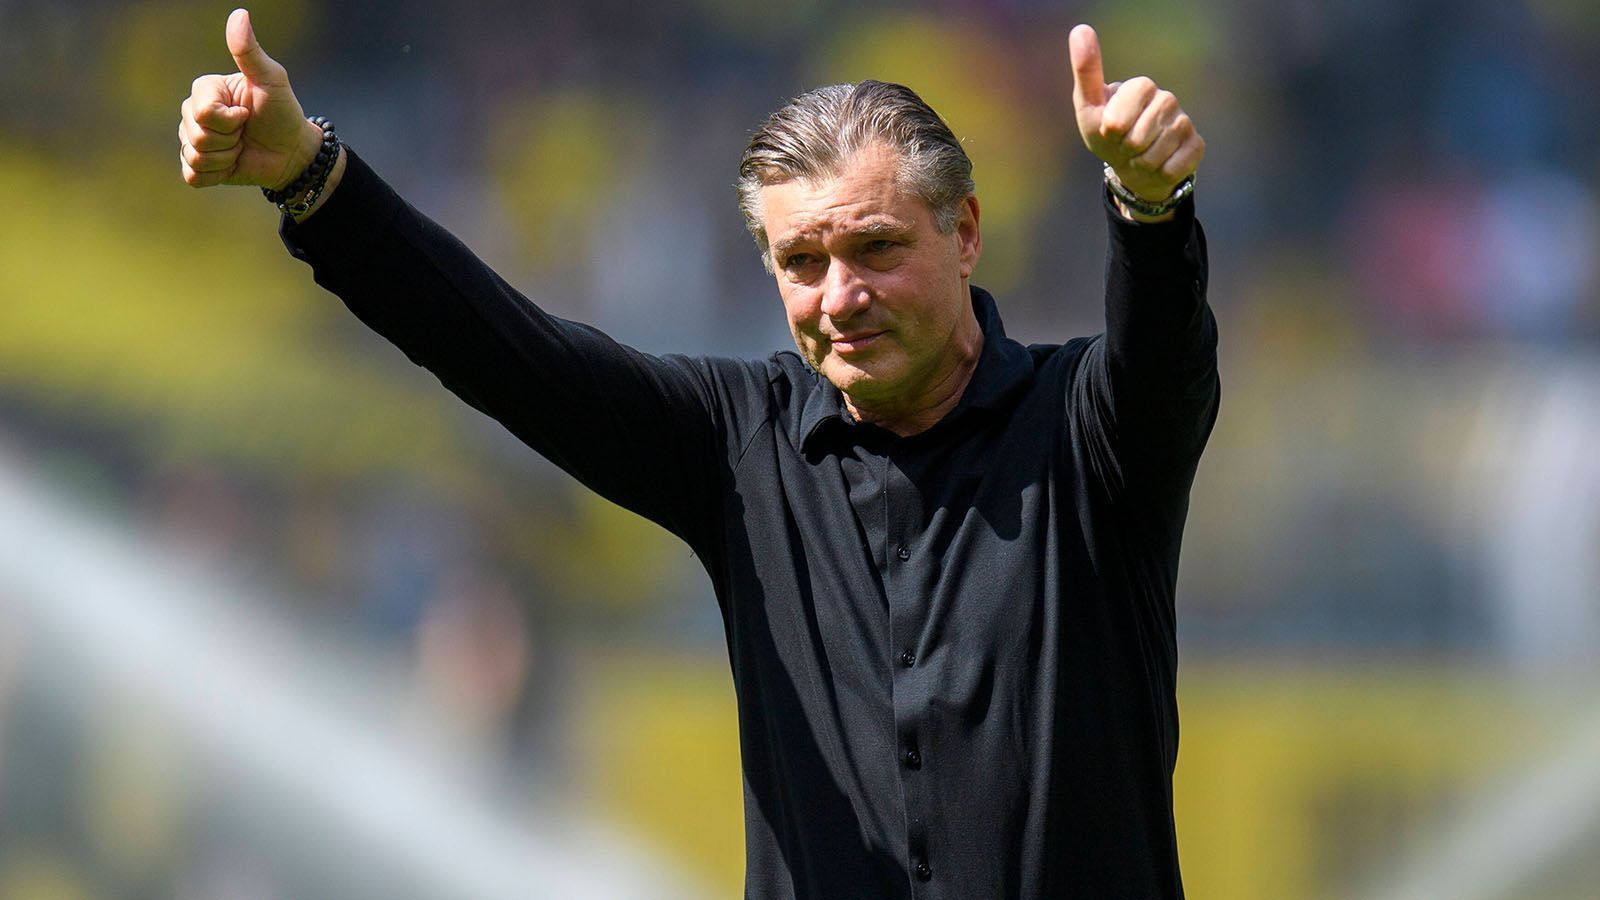 
                <strong>Michael Zorc verabschiedet sich! </strong><br>
                ... auch Michael Zorc beendet seine Zeit bei Borussia Dortmund. Nach 44 Jahren im Verein begibt sich der 59-Jährige in den Ruhestand. Der gebürtige Dortmunder schließt sich 1978 der Jugend des BVB an und absolviert insgesamt 572 Spiele für die "Schwarzgelben". Nach seinem Karriereende wechselt Zorc ins Management. Als Spieler und Manager feiert er mit dem Klub fünf Meisterschaften, gewinnt viermal den DFB-Pokal und wird einmal Champions-League-Sieger.
              